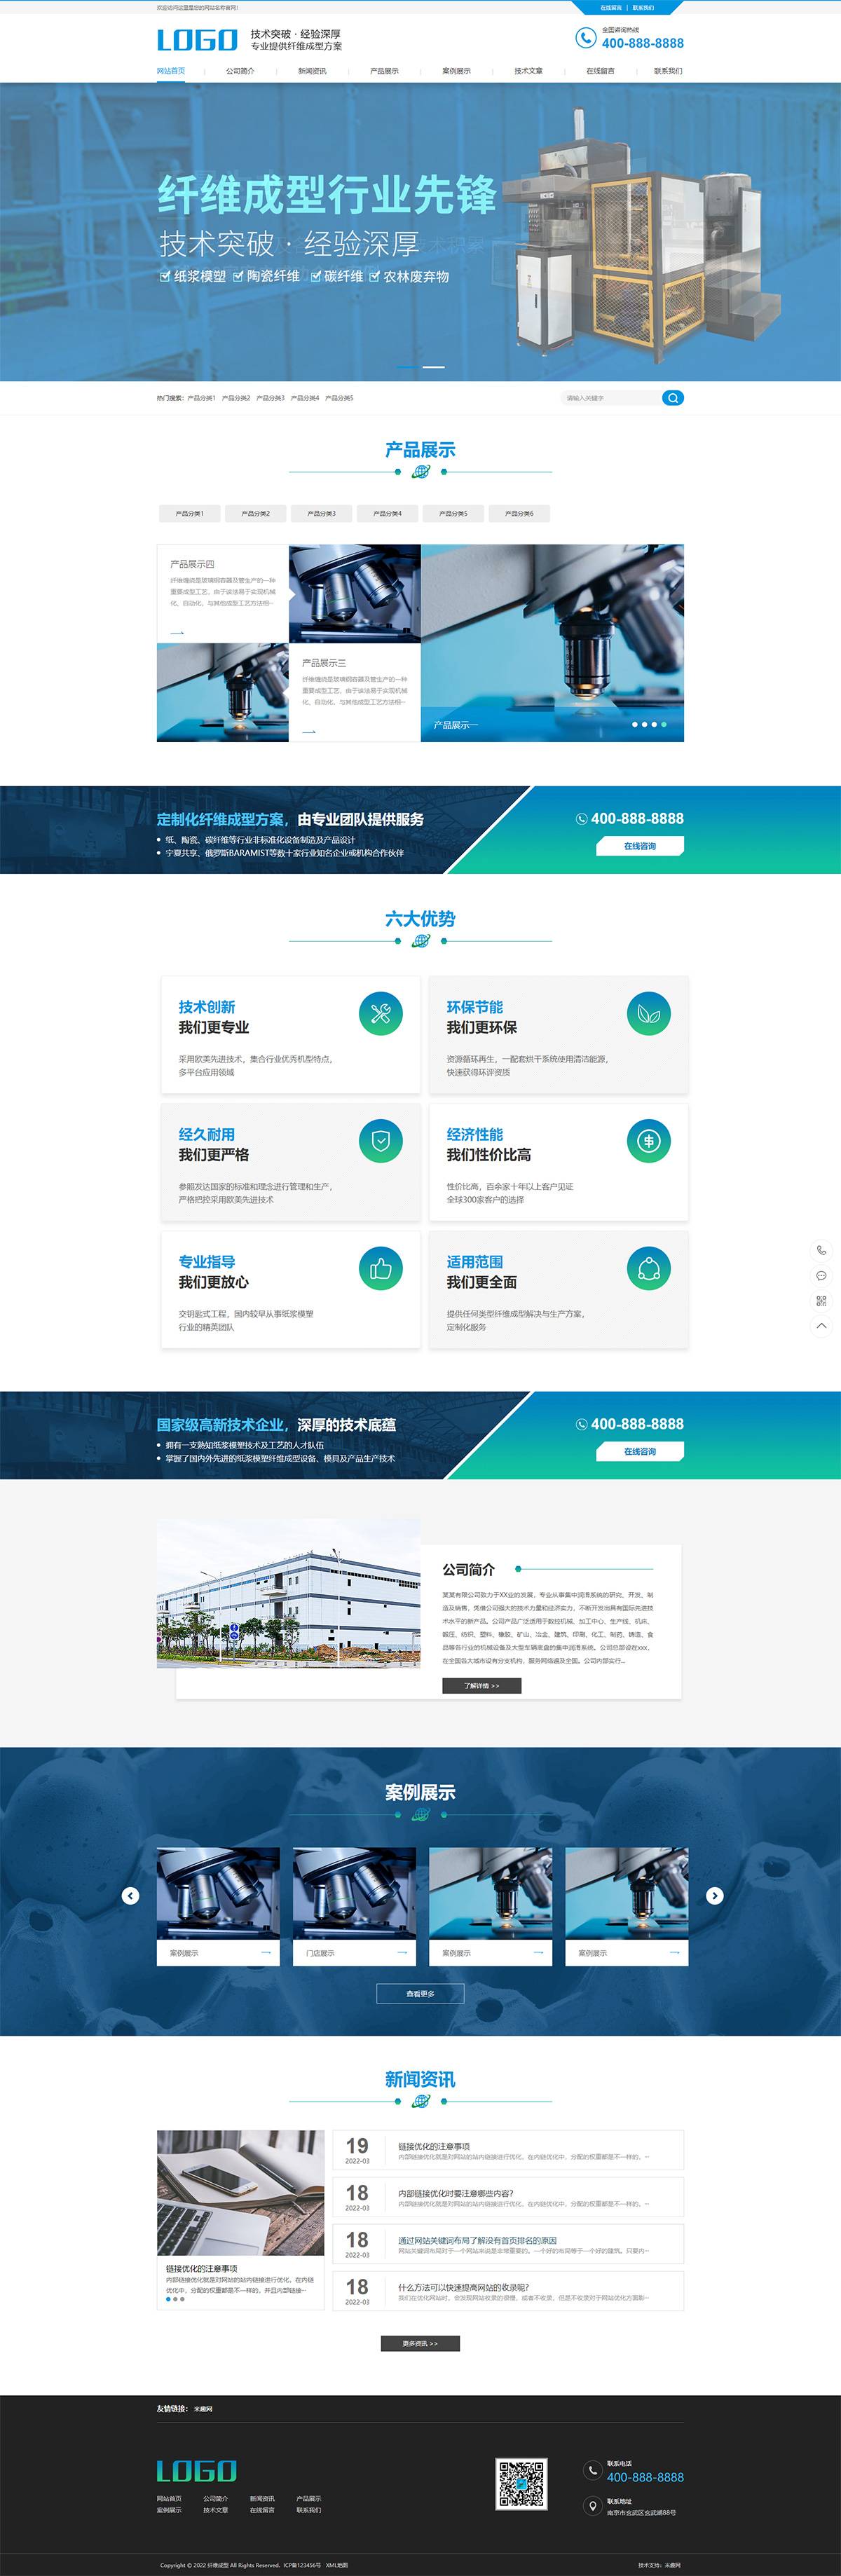 (PC+WAP)蓝色营销型纸浆模塑碳纤维机器网站源码 纤维成型行业设备pbootcms网站模板